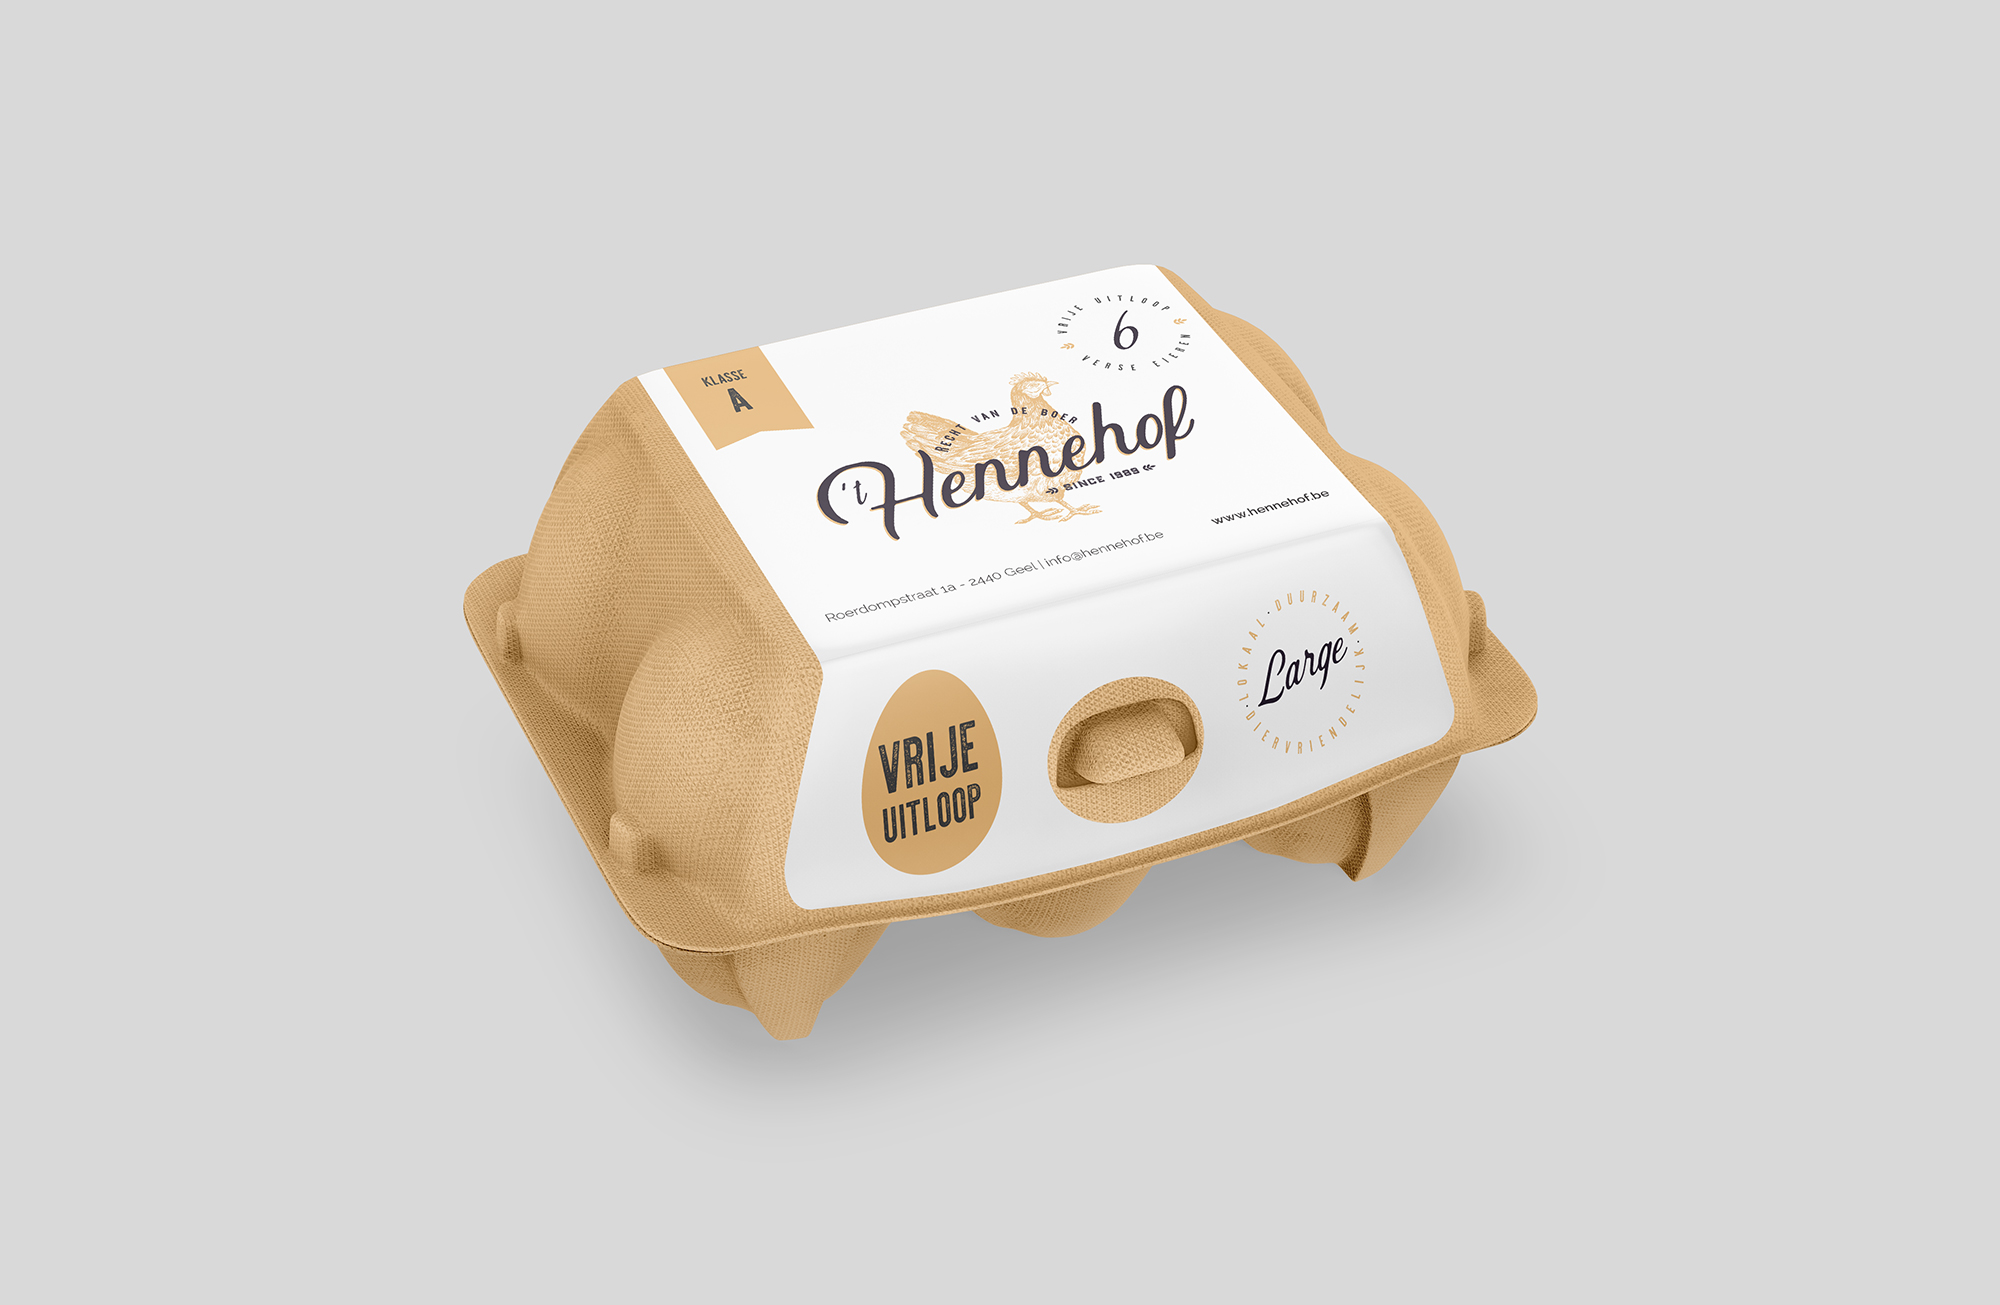 Packaging Hennehof